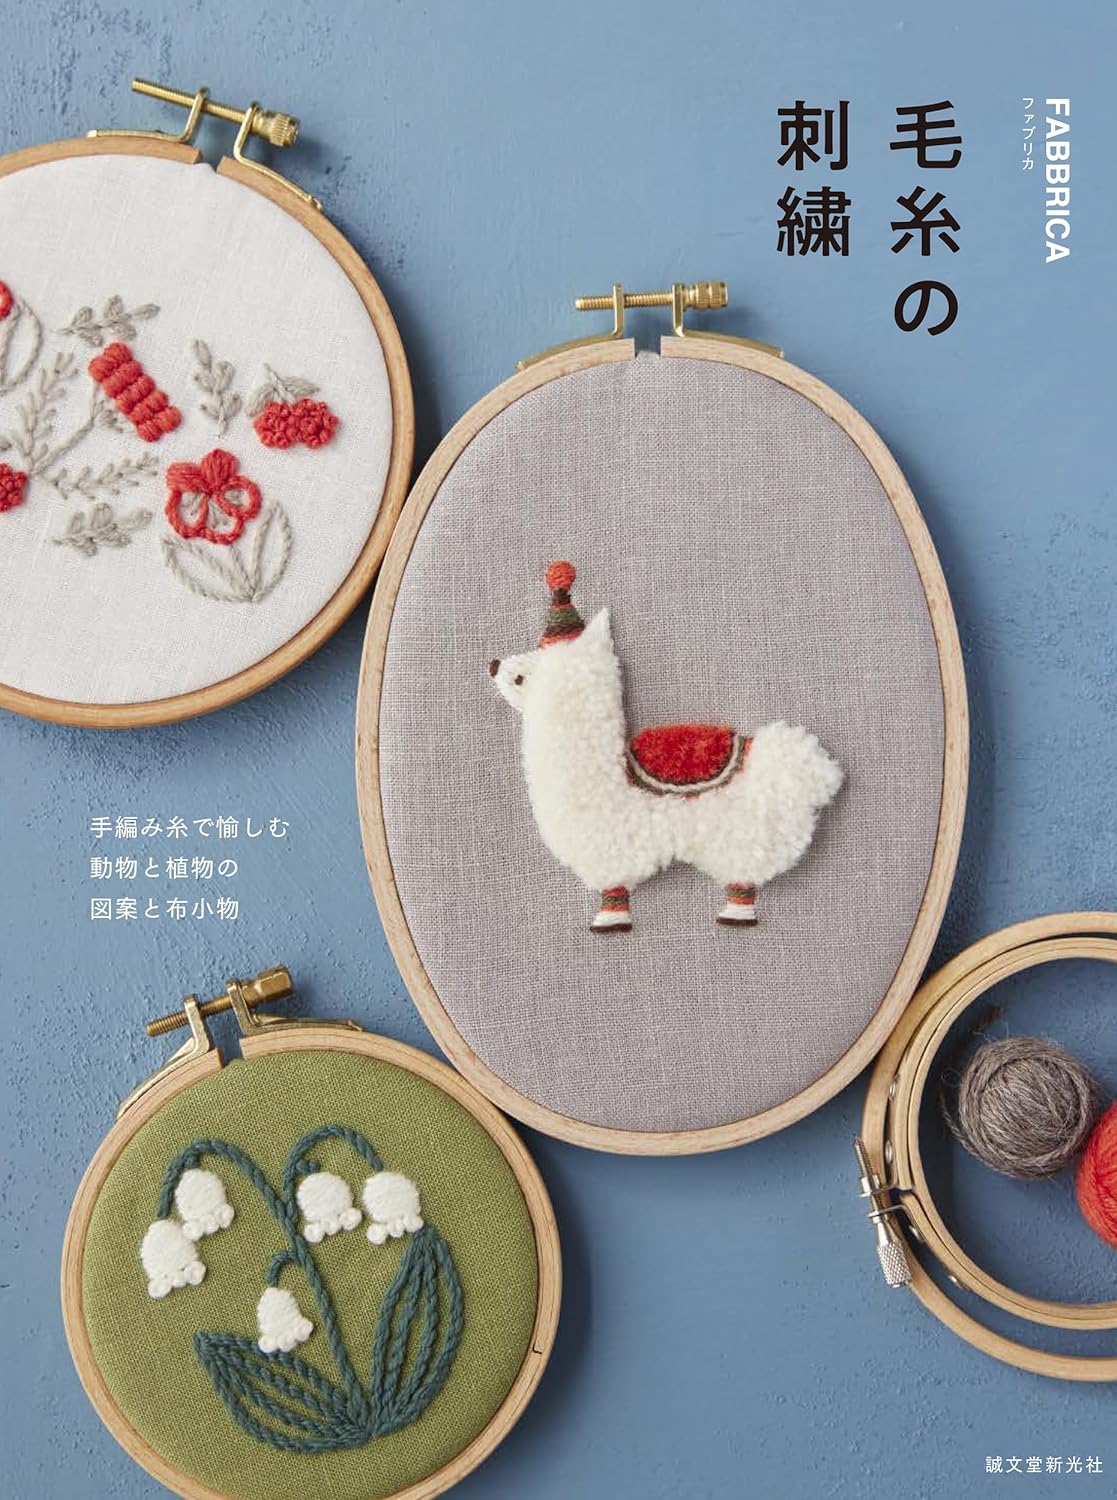 毛絲の刺繡: 手編み絲で愉しむ 動物と植物の圖案と布小物